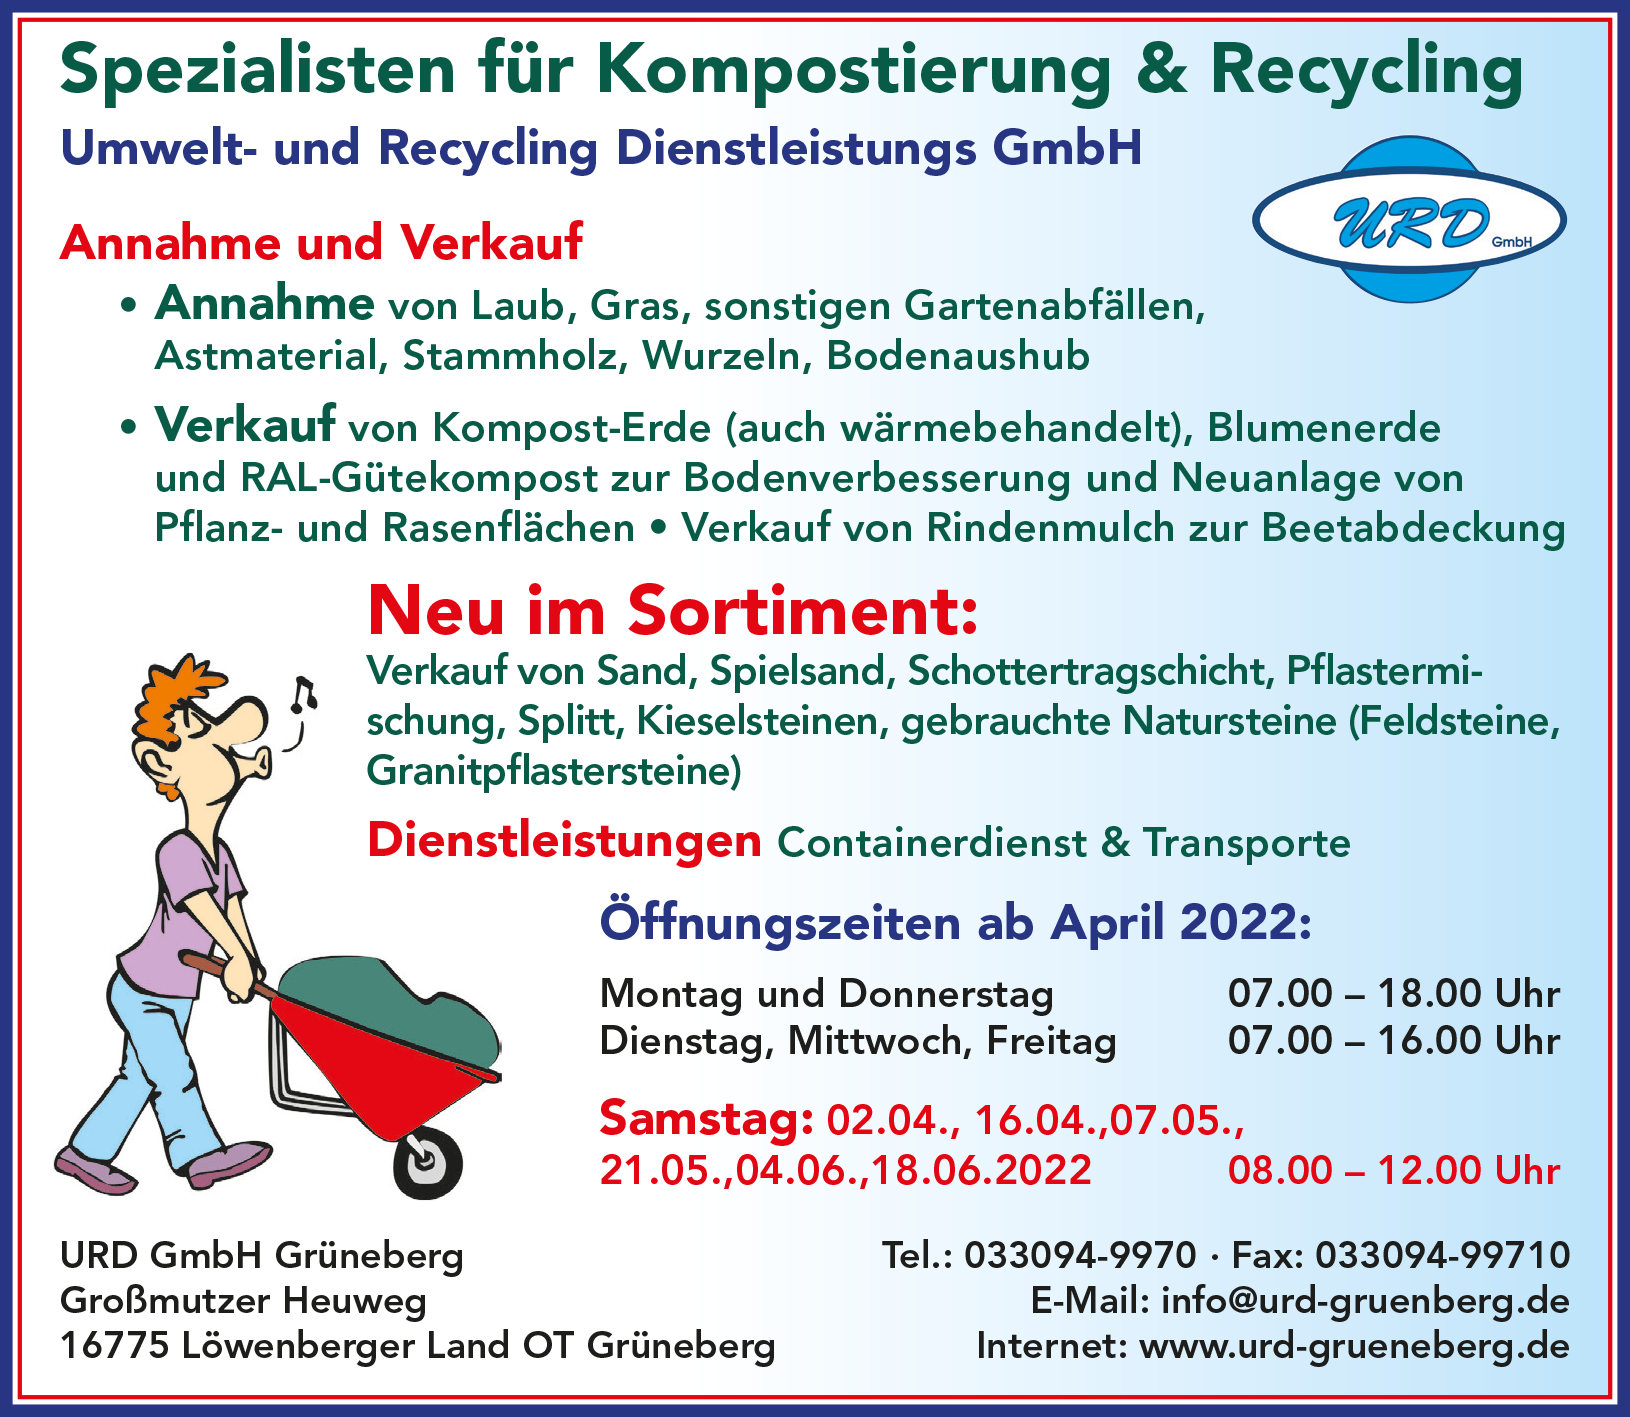 Bild 16 URD Umwelt- und Recycling Dienstleistungs GmbH Grüneberg in Löwenberger Land